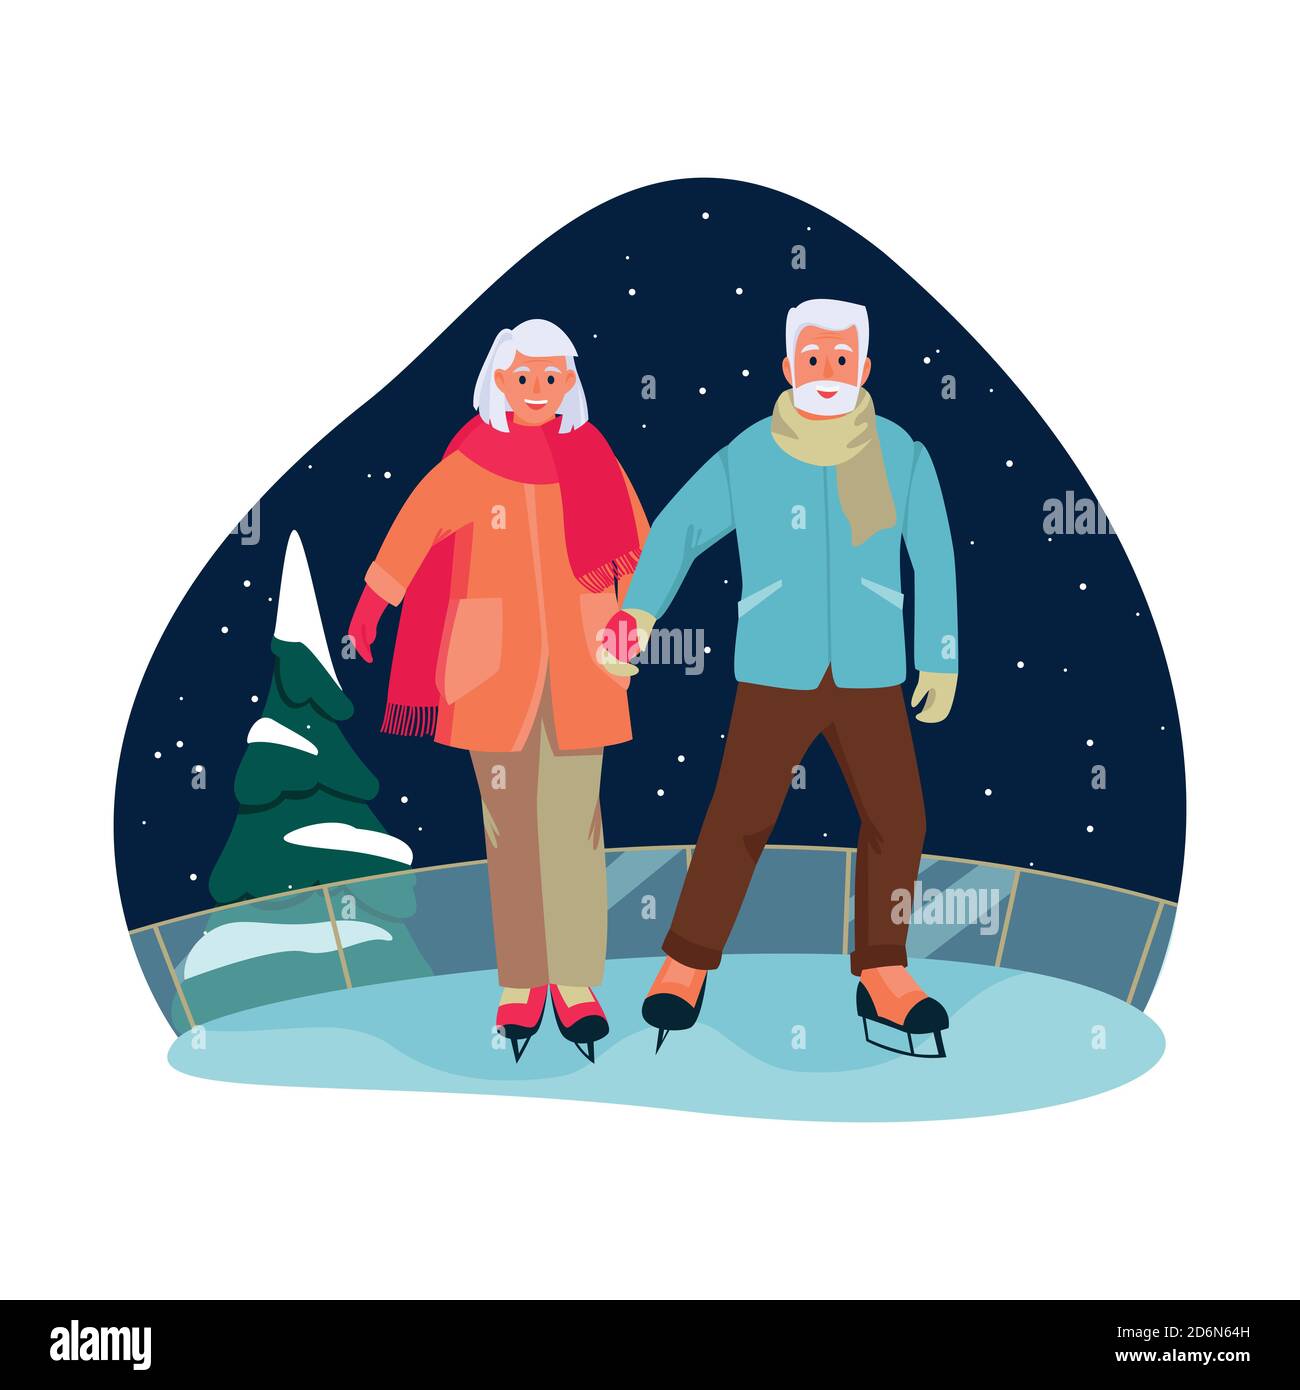 La coppia anziana pattina sulla pista di pattinaggio. Vector cartoon piatto illustrazione del tempo libero invernale all'aperto. Concetto di uno stile di vita sano e attivo degli anziani. Illustrazione Vettoriale